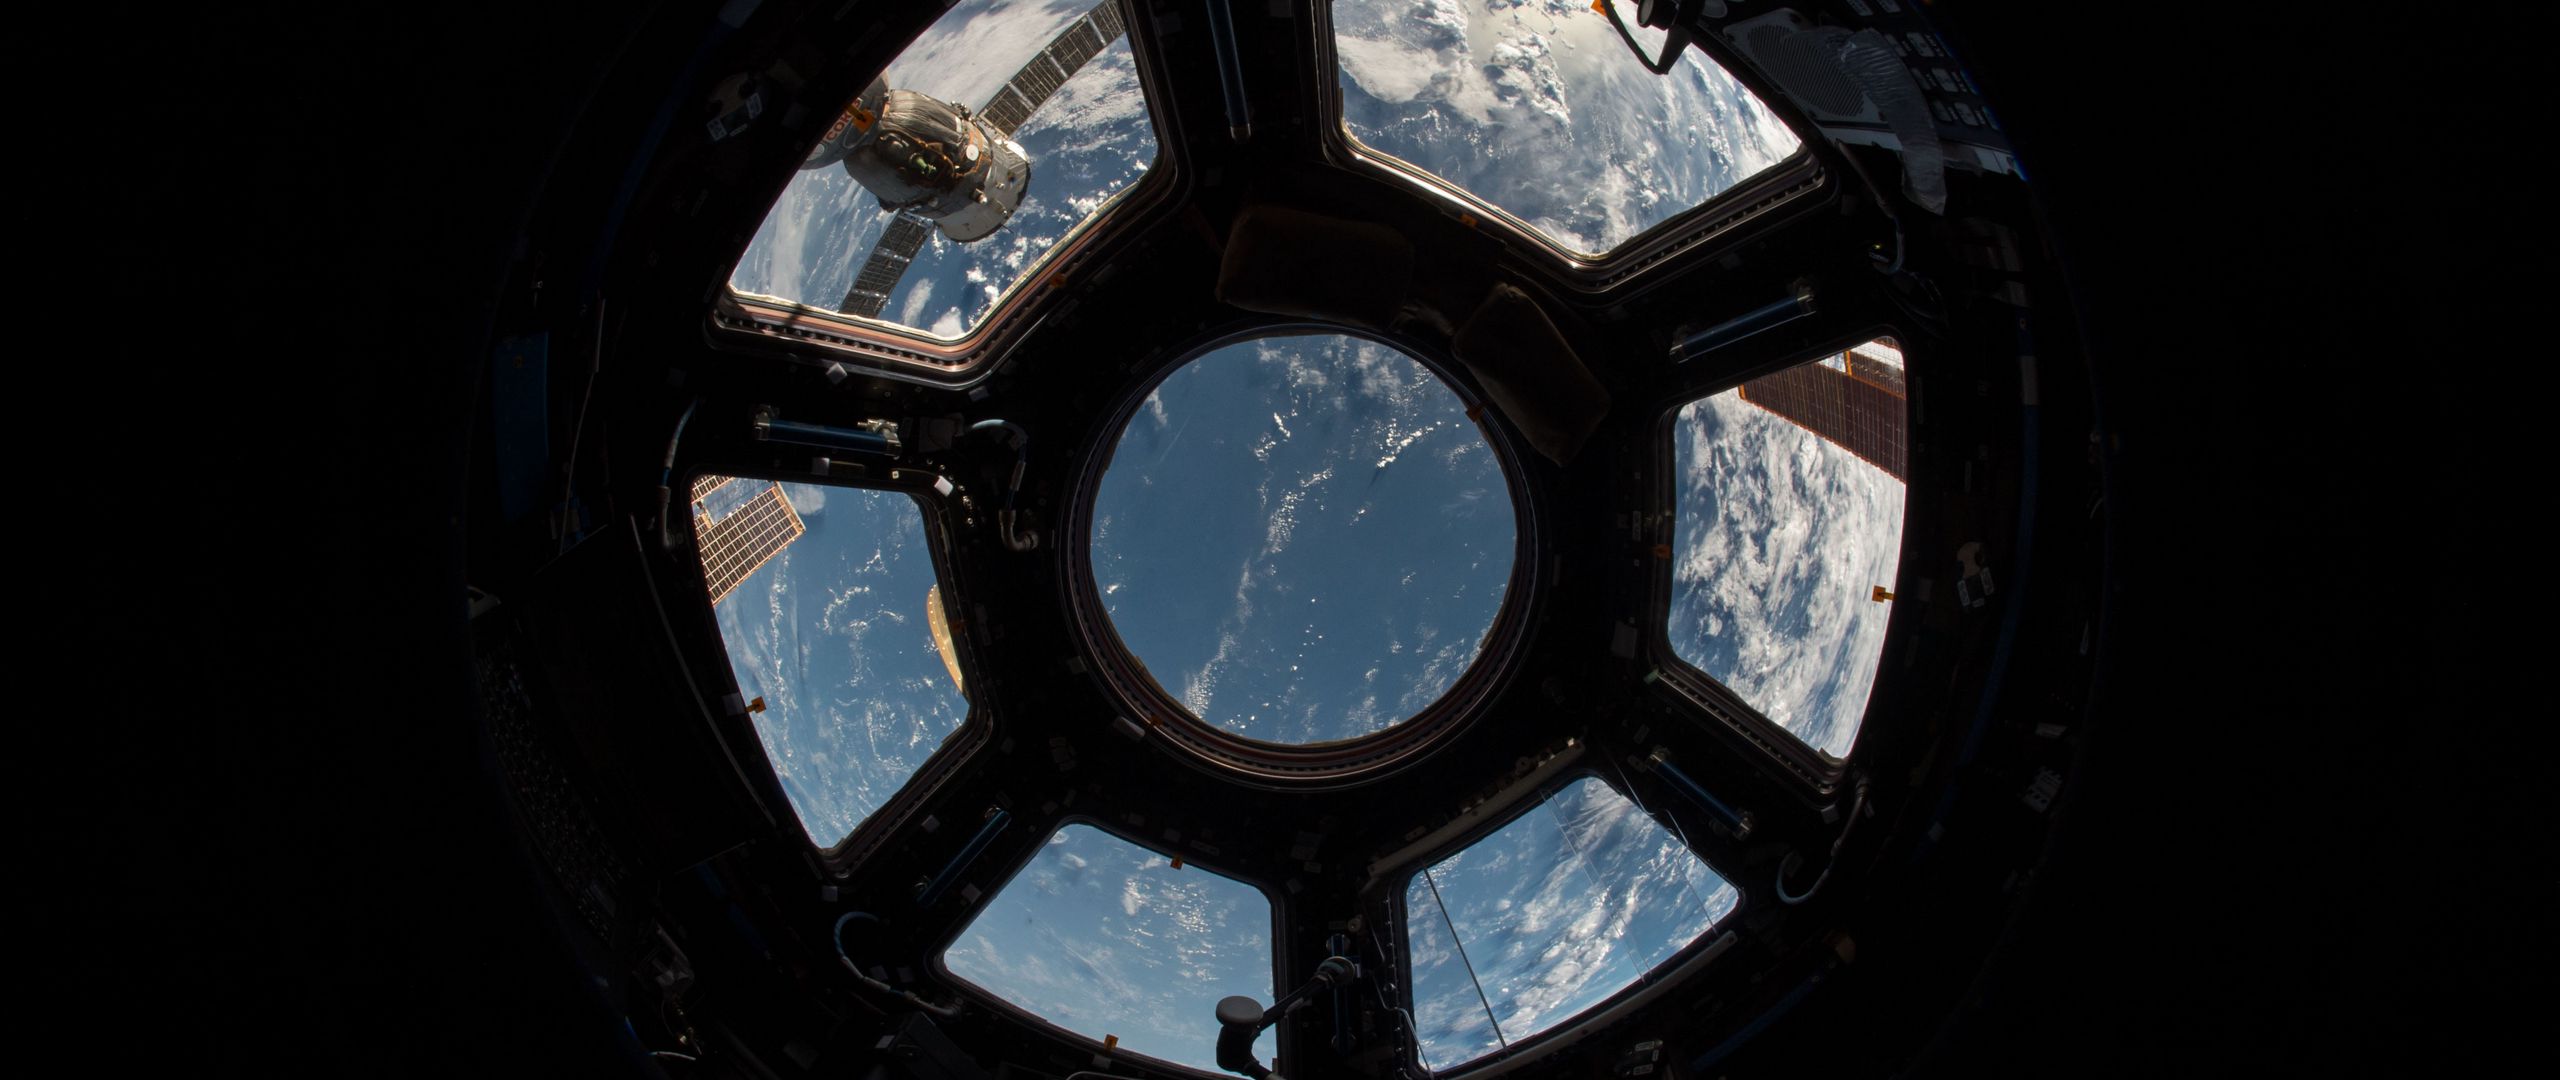 Space view. Хромакей иллюминатор МКС. Окно космического корабля. Вид из космолета. Иллюминатор космического корабля.